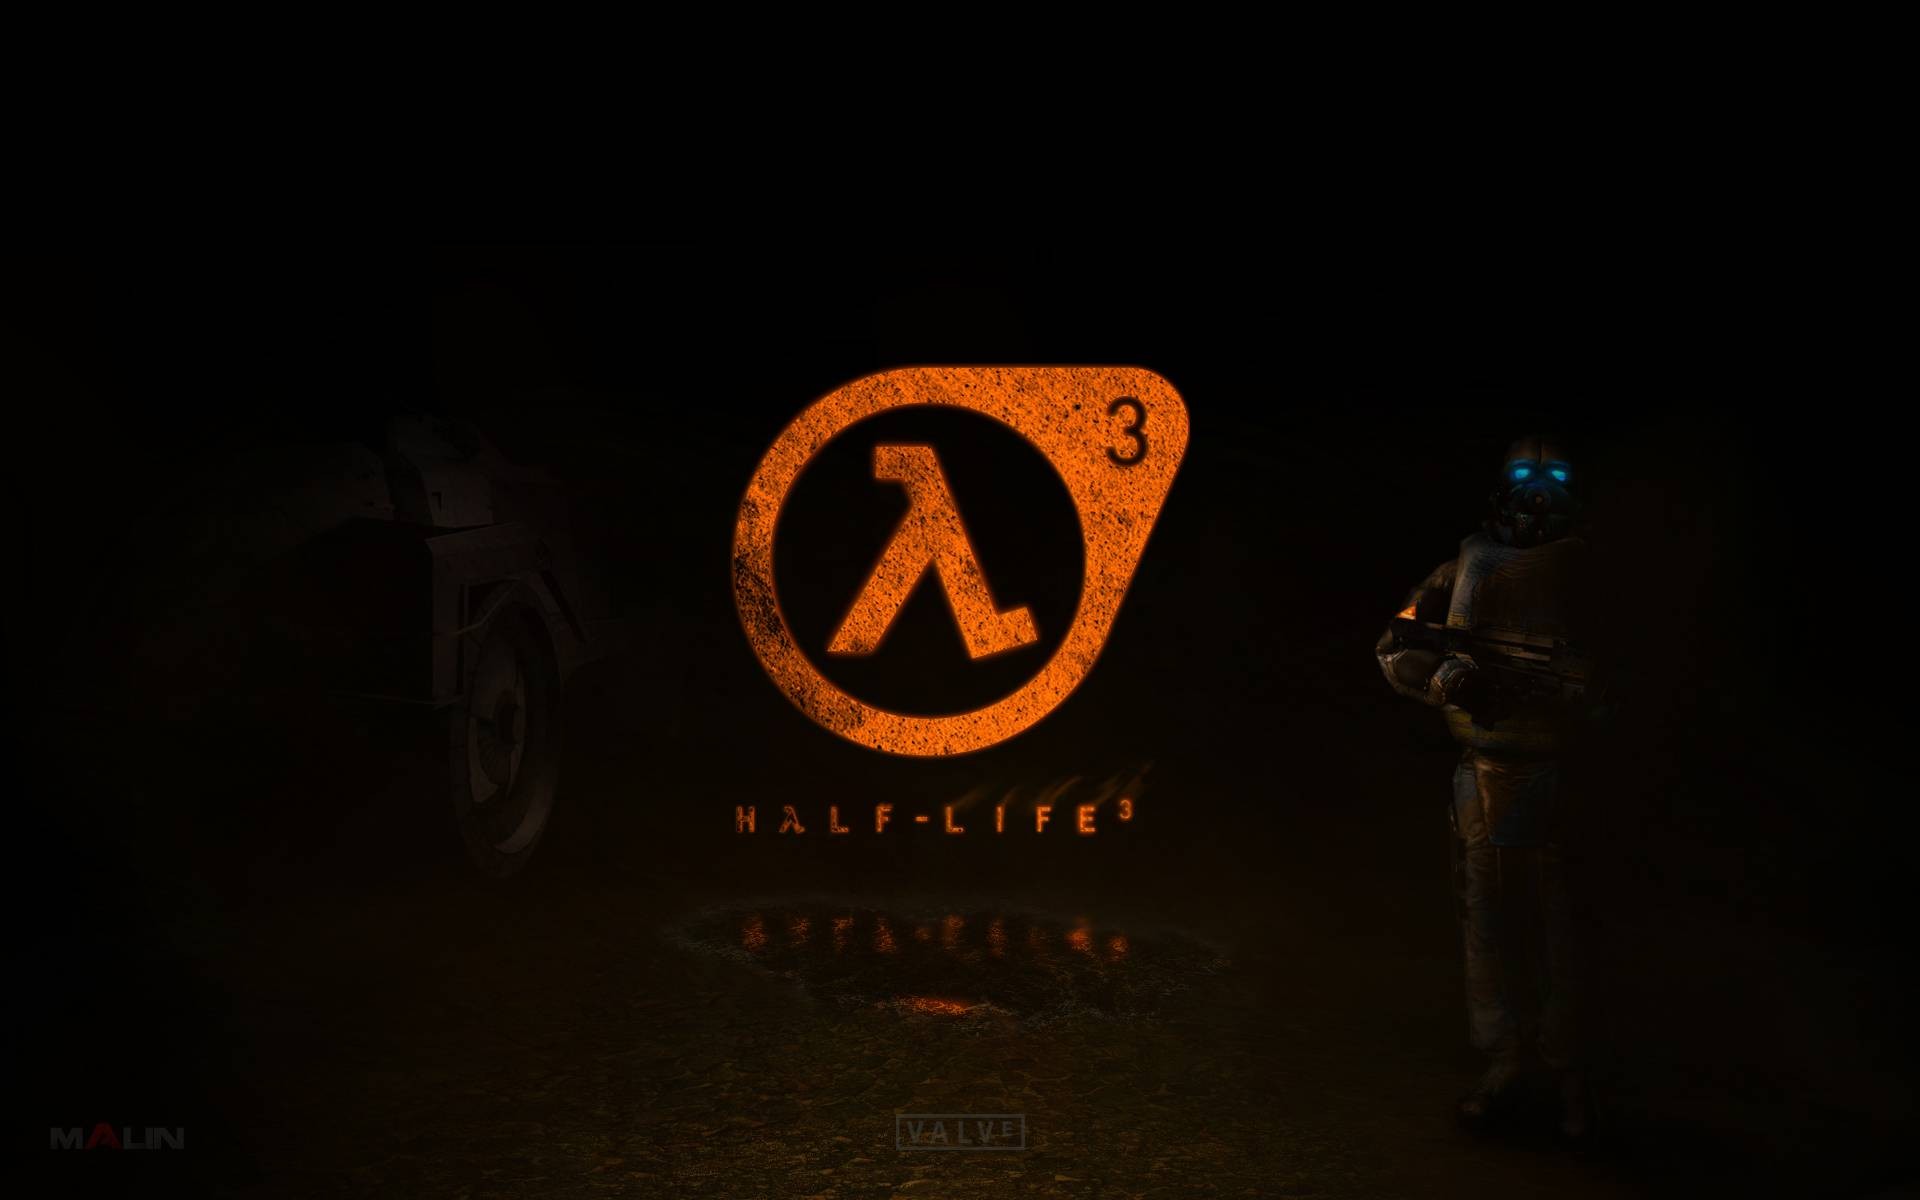 Fond d'ecran Half-Life 3